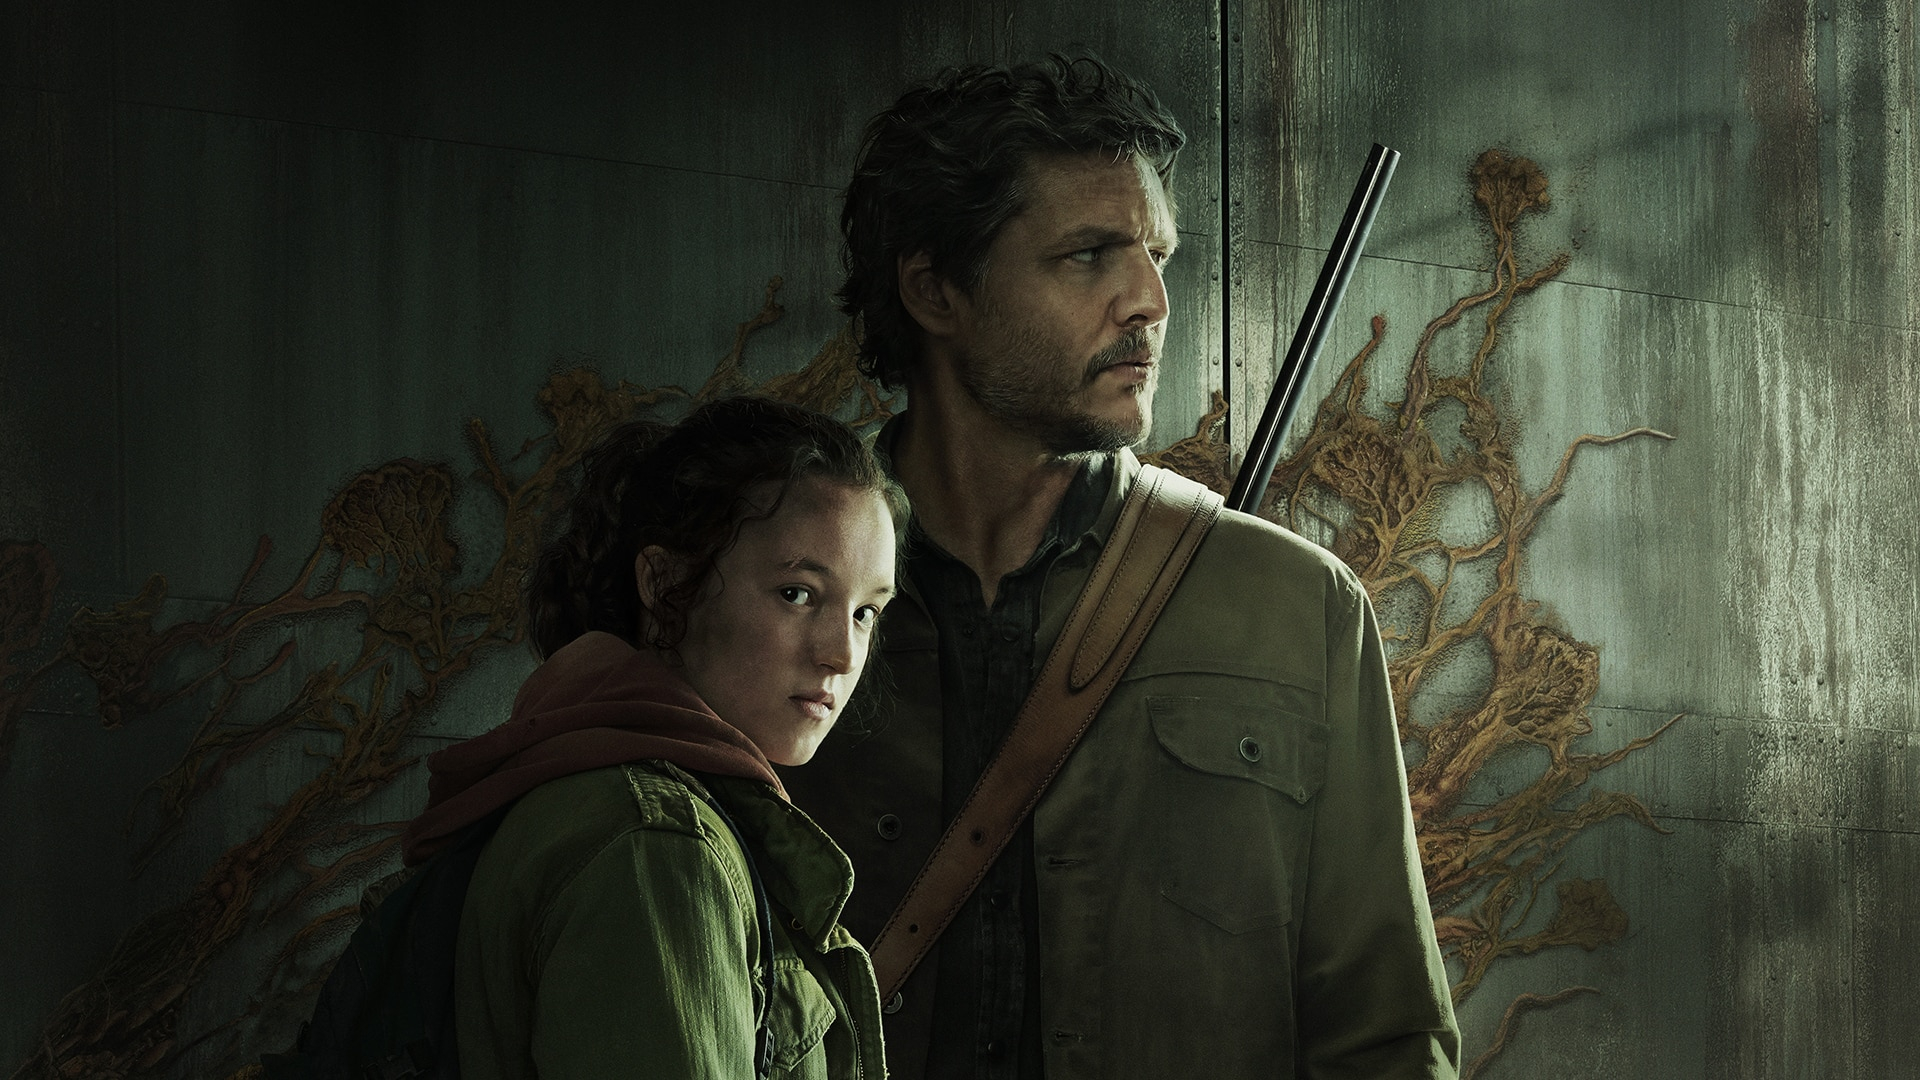 Infektionen spreder sig: Skaberen af The Last of Us siger, at sæson 2 er "klar til lancering" og fuld af overraskelser 